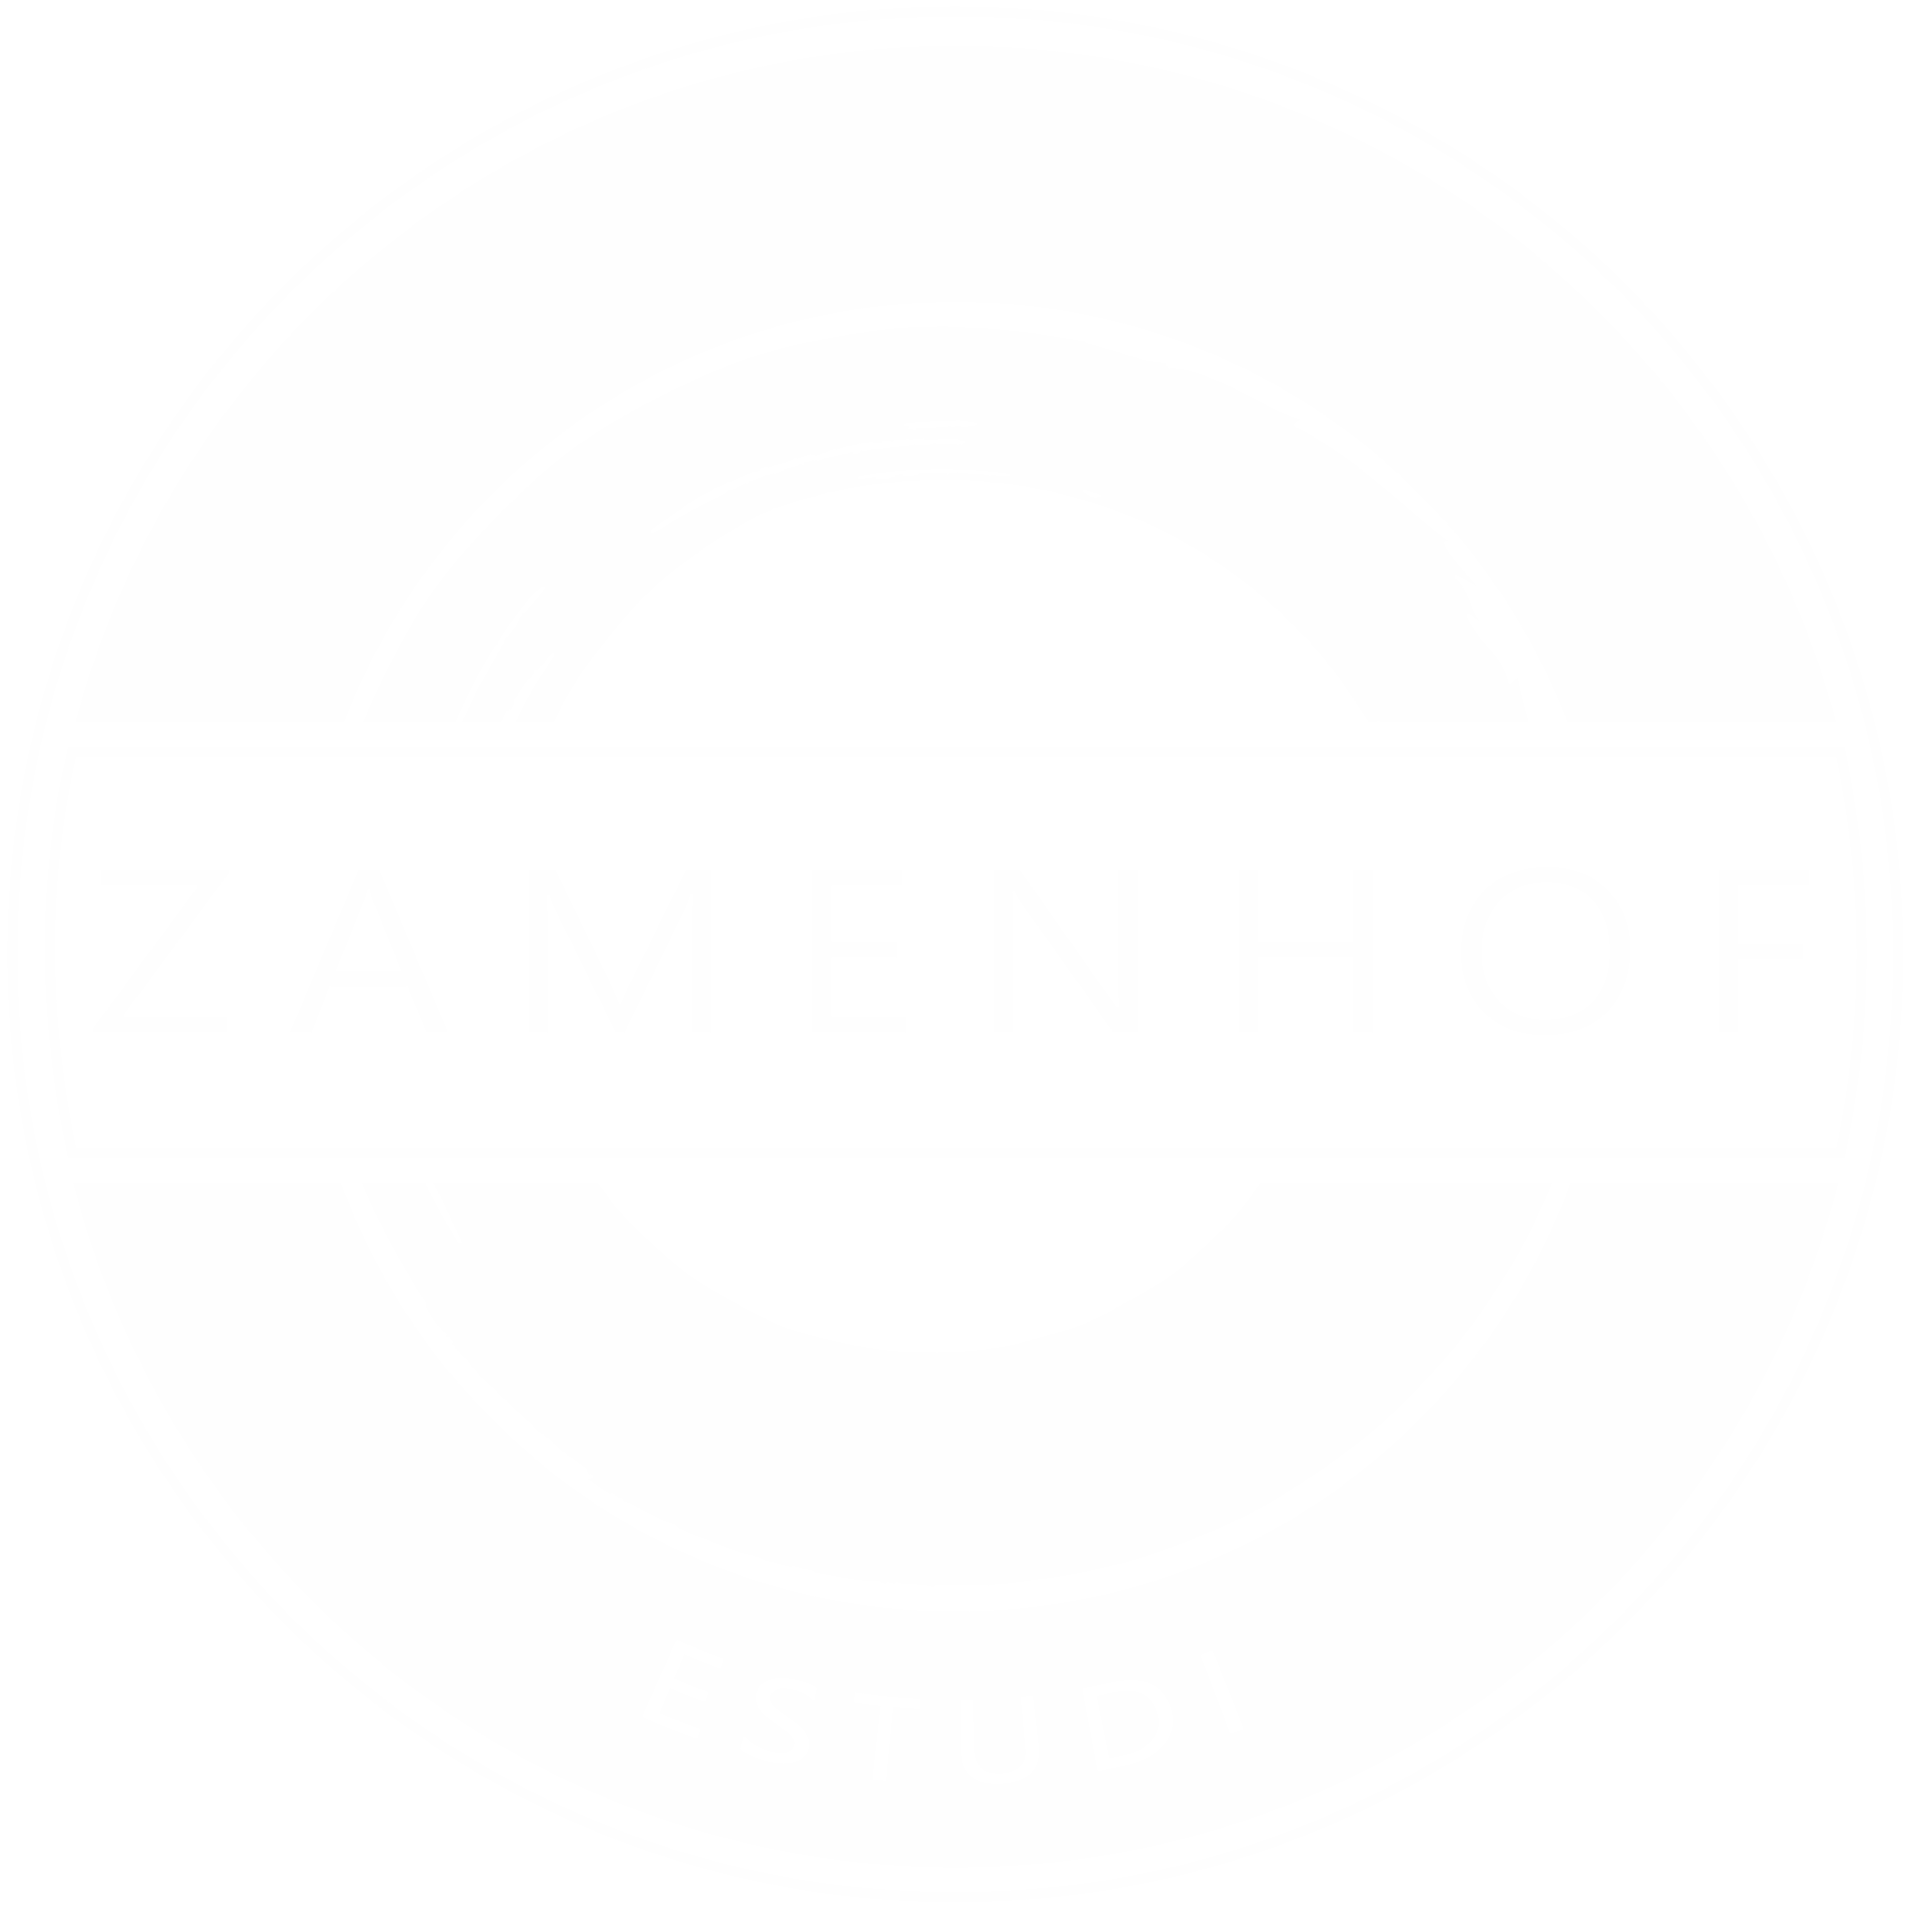 Zamenhof Estudi